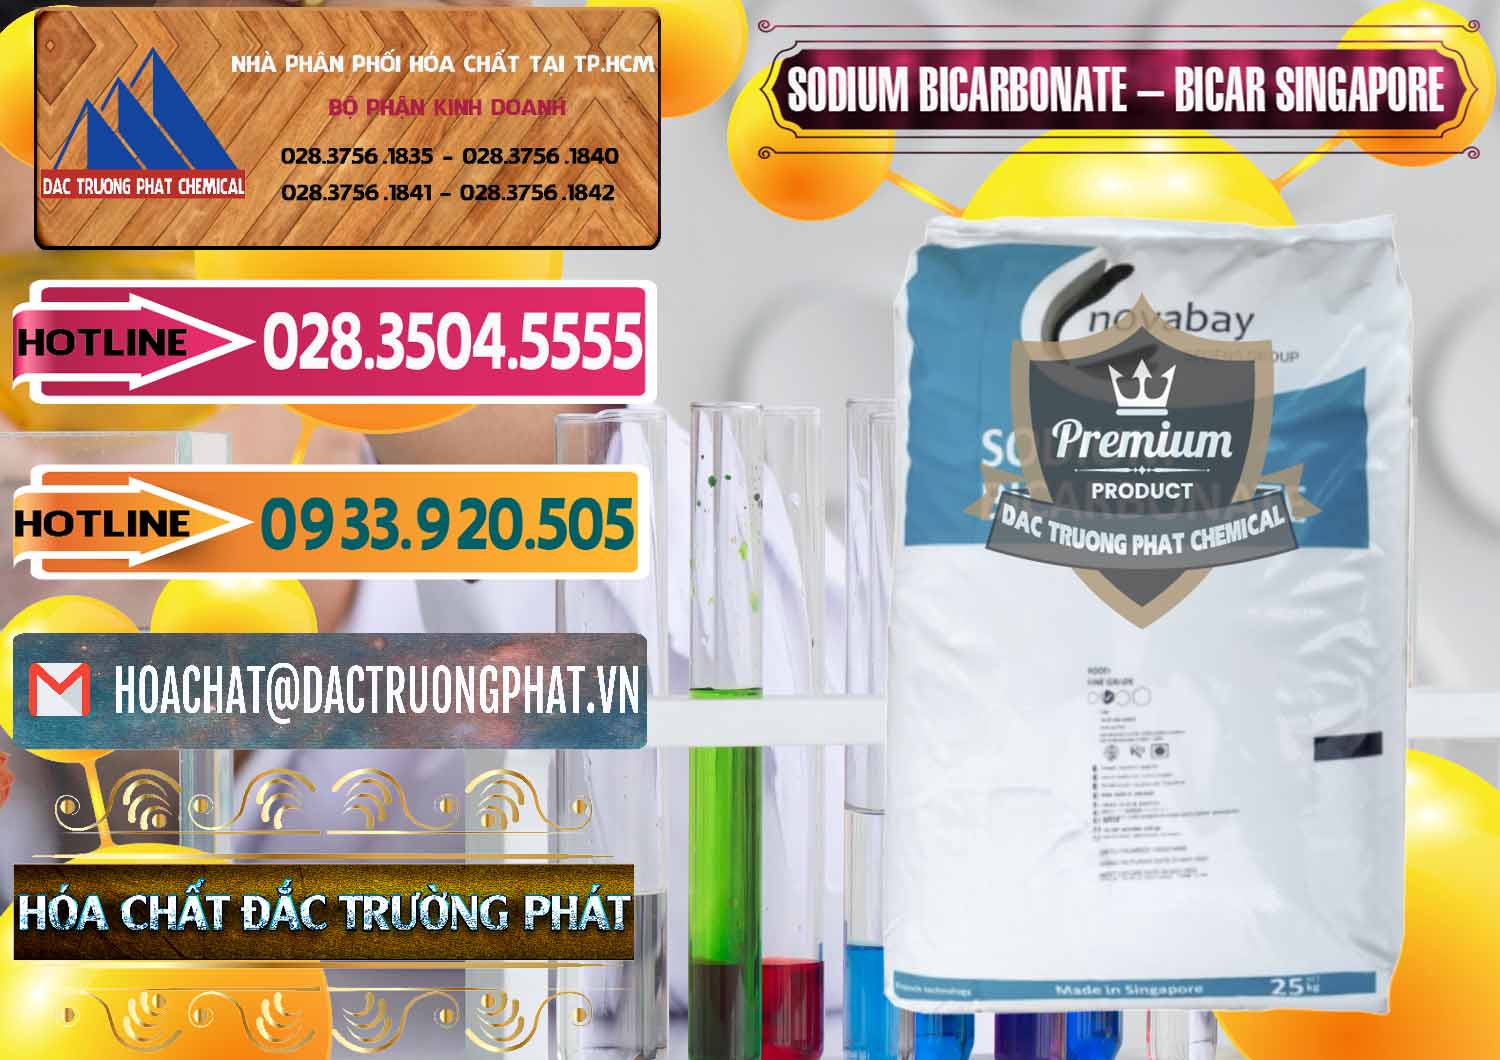 Cty chuyên bán - phân phối Sodium Bicarbonate – Bicar NaHCO3 Singapore - 0411 - Nơi phân phối và cung cấp hóa chất tại TP.HCM - dactruongphat.vn